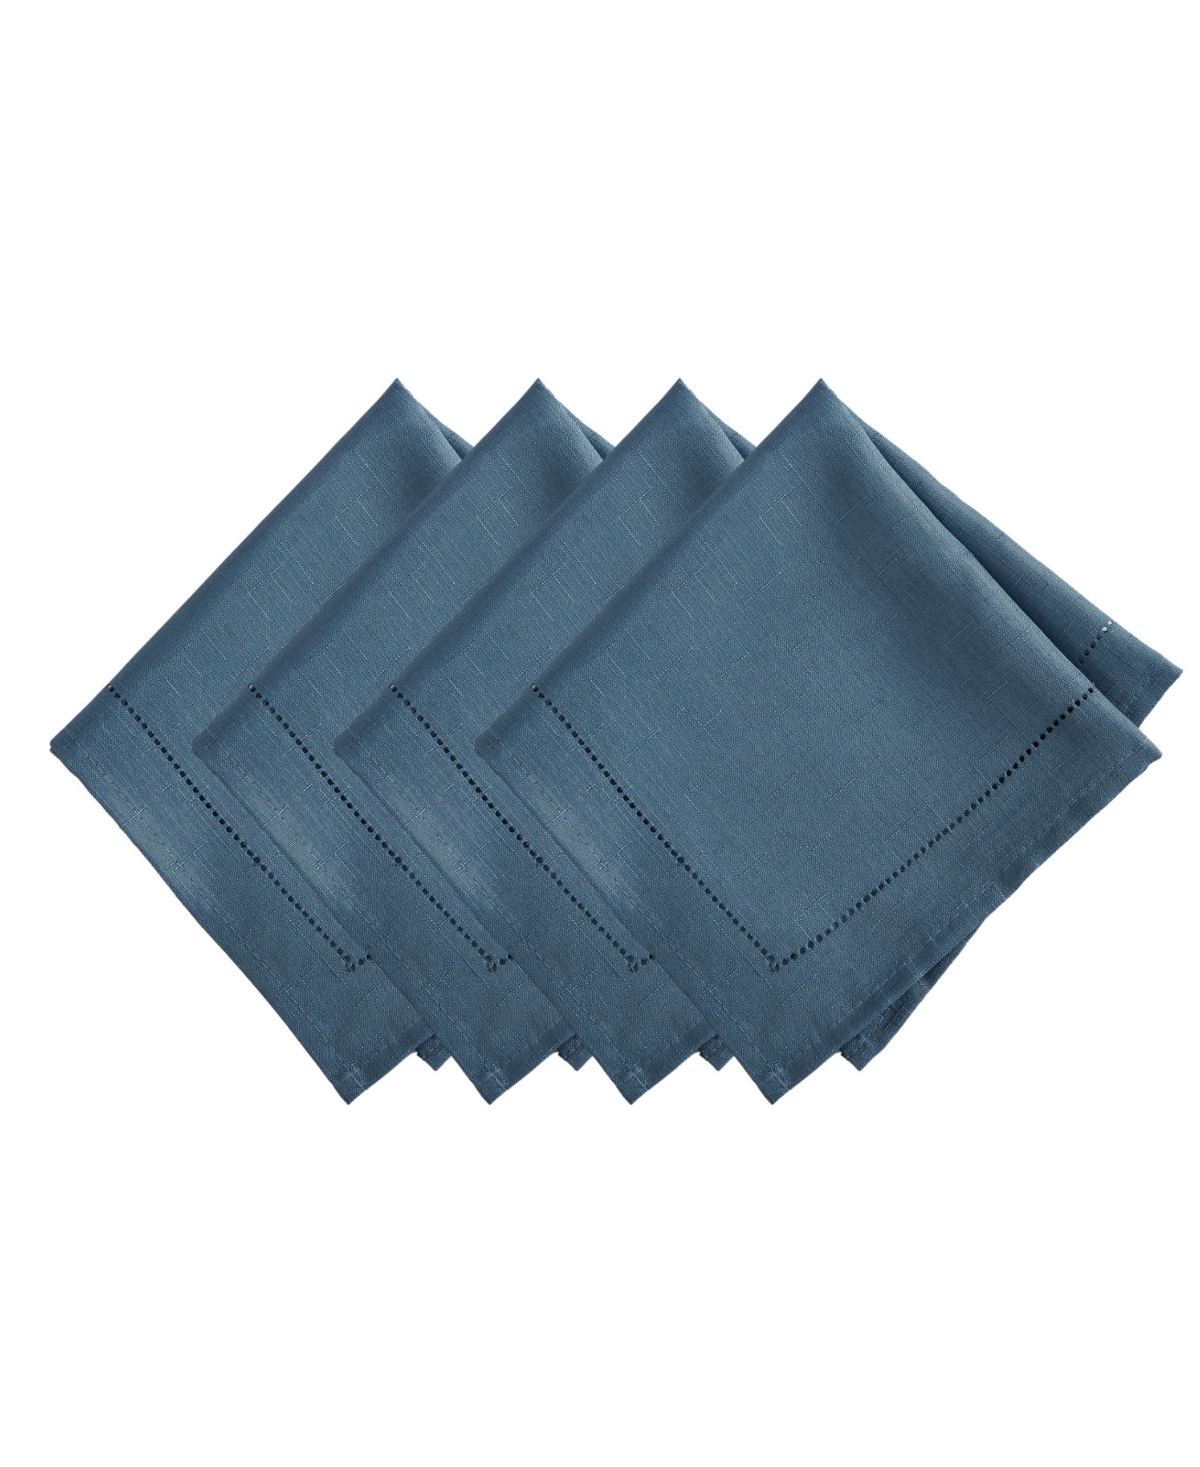 Elrene Alison Eyelet Punched Border Fabric Napkin, Set Of 4 In Copen Blue